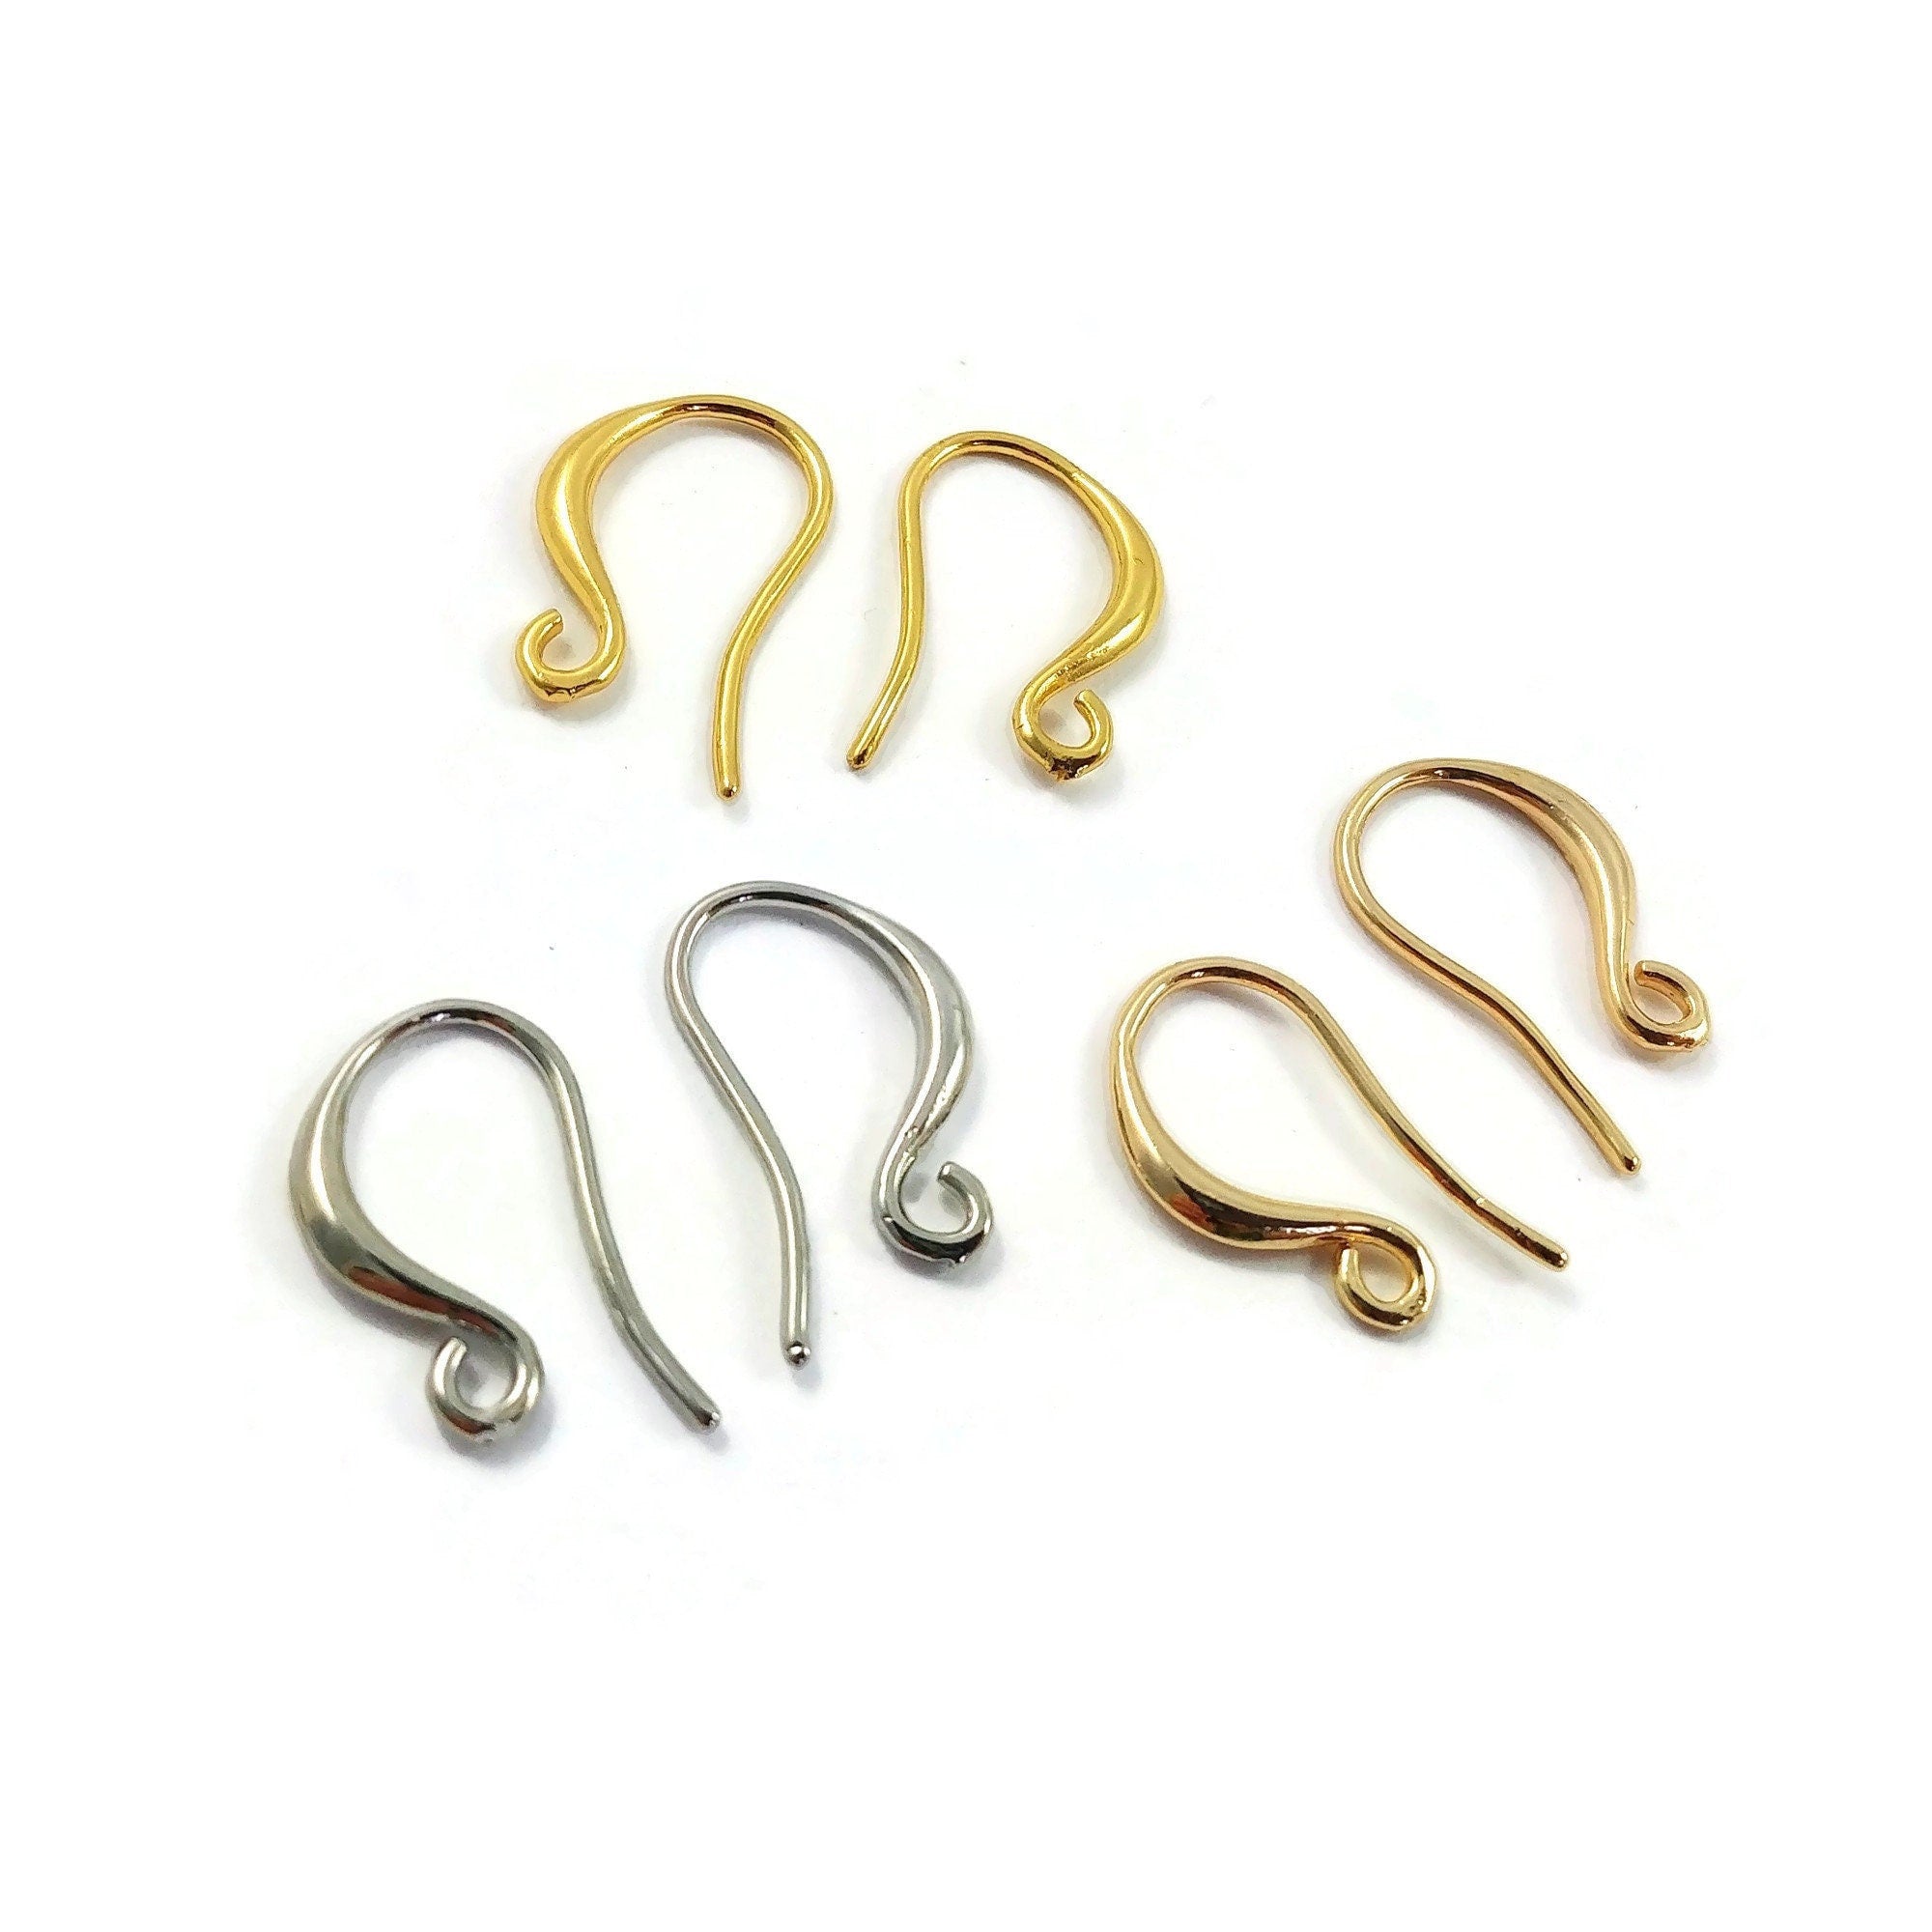 Acejoz Hypoallergenic Earring Hooks for Jewelry Making 800Pcs